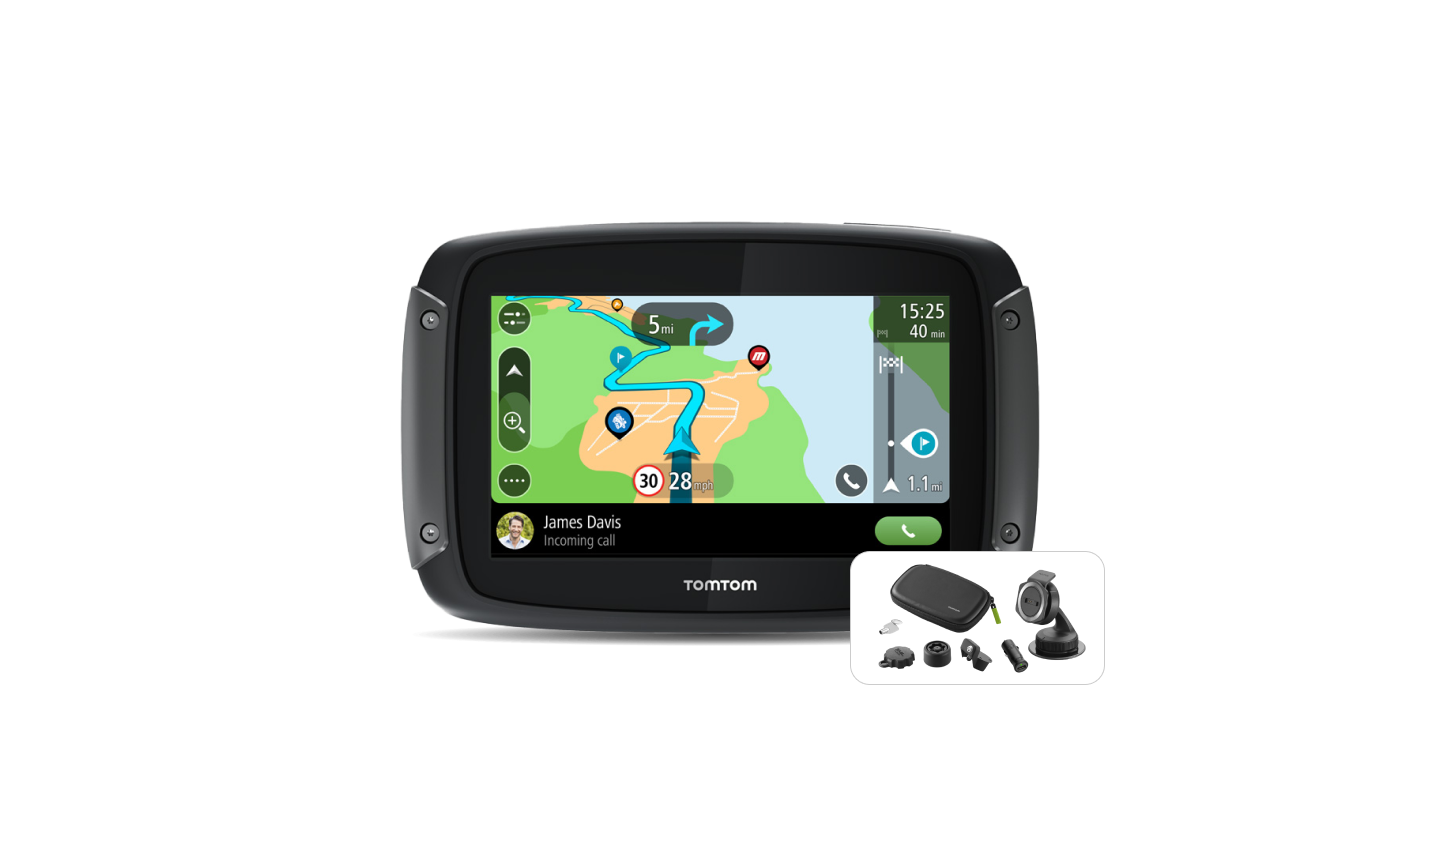 GPS navigace TomTom Rider 550